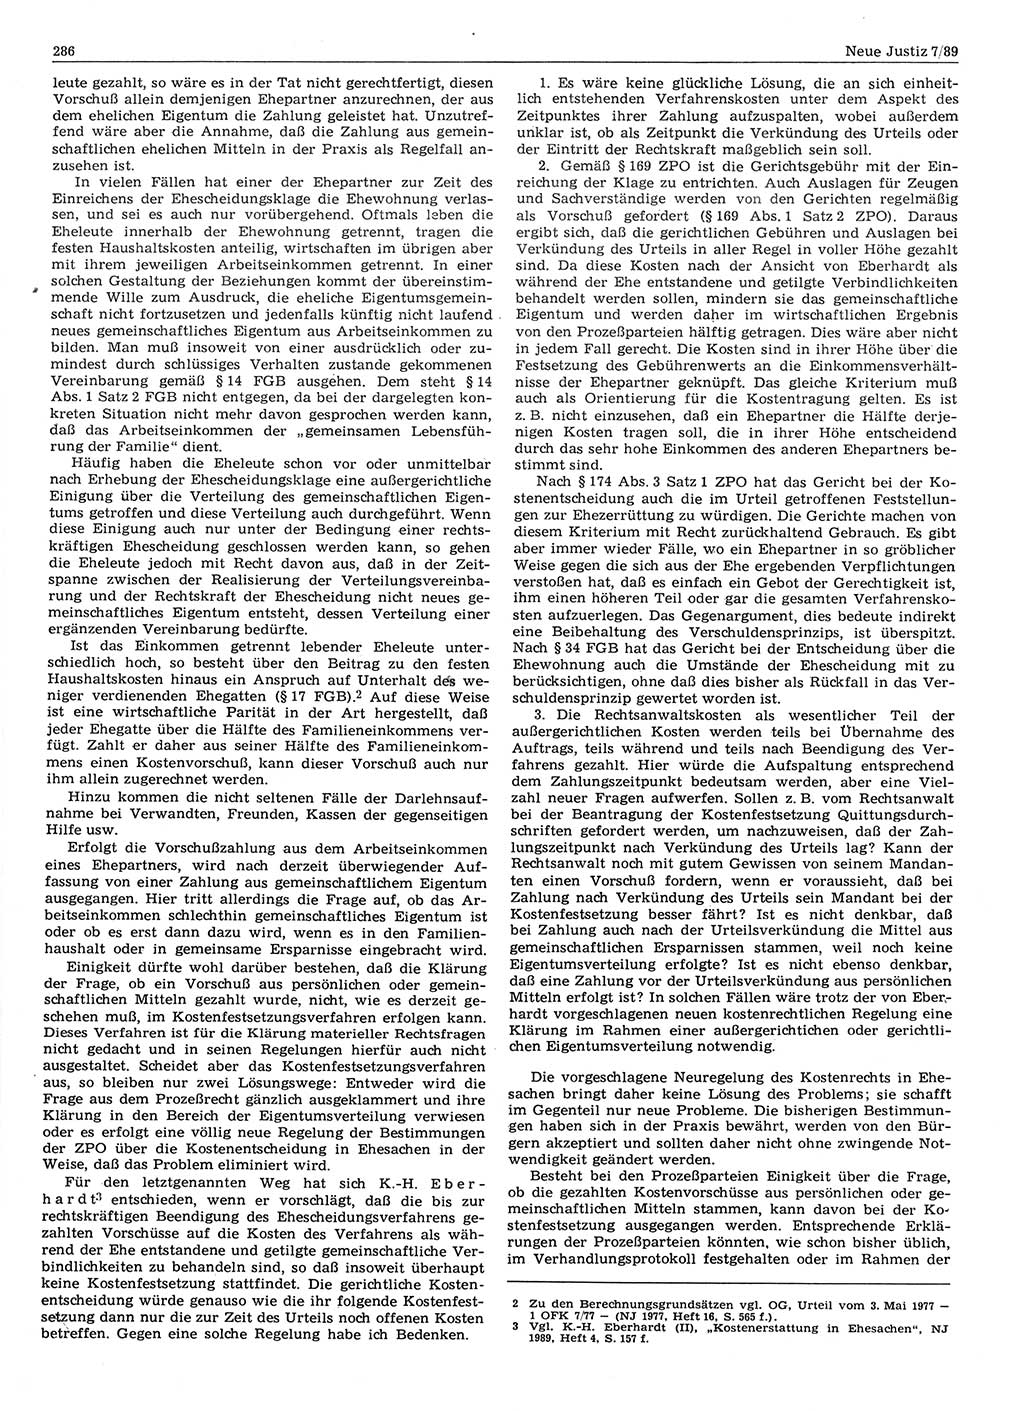 Neue Justiz (NJ), Zeitschrift für sozialistisches Recht und Gesetzlichkeit [Deutsche Demokratische Republik (DDR)], 43. Jahrgang 1989, Seite 286 (NJ DDR 1989, S. 286)